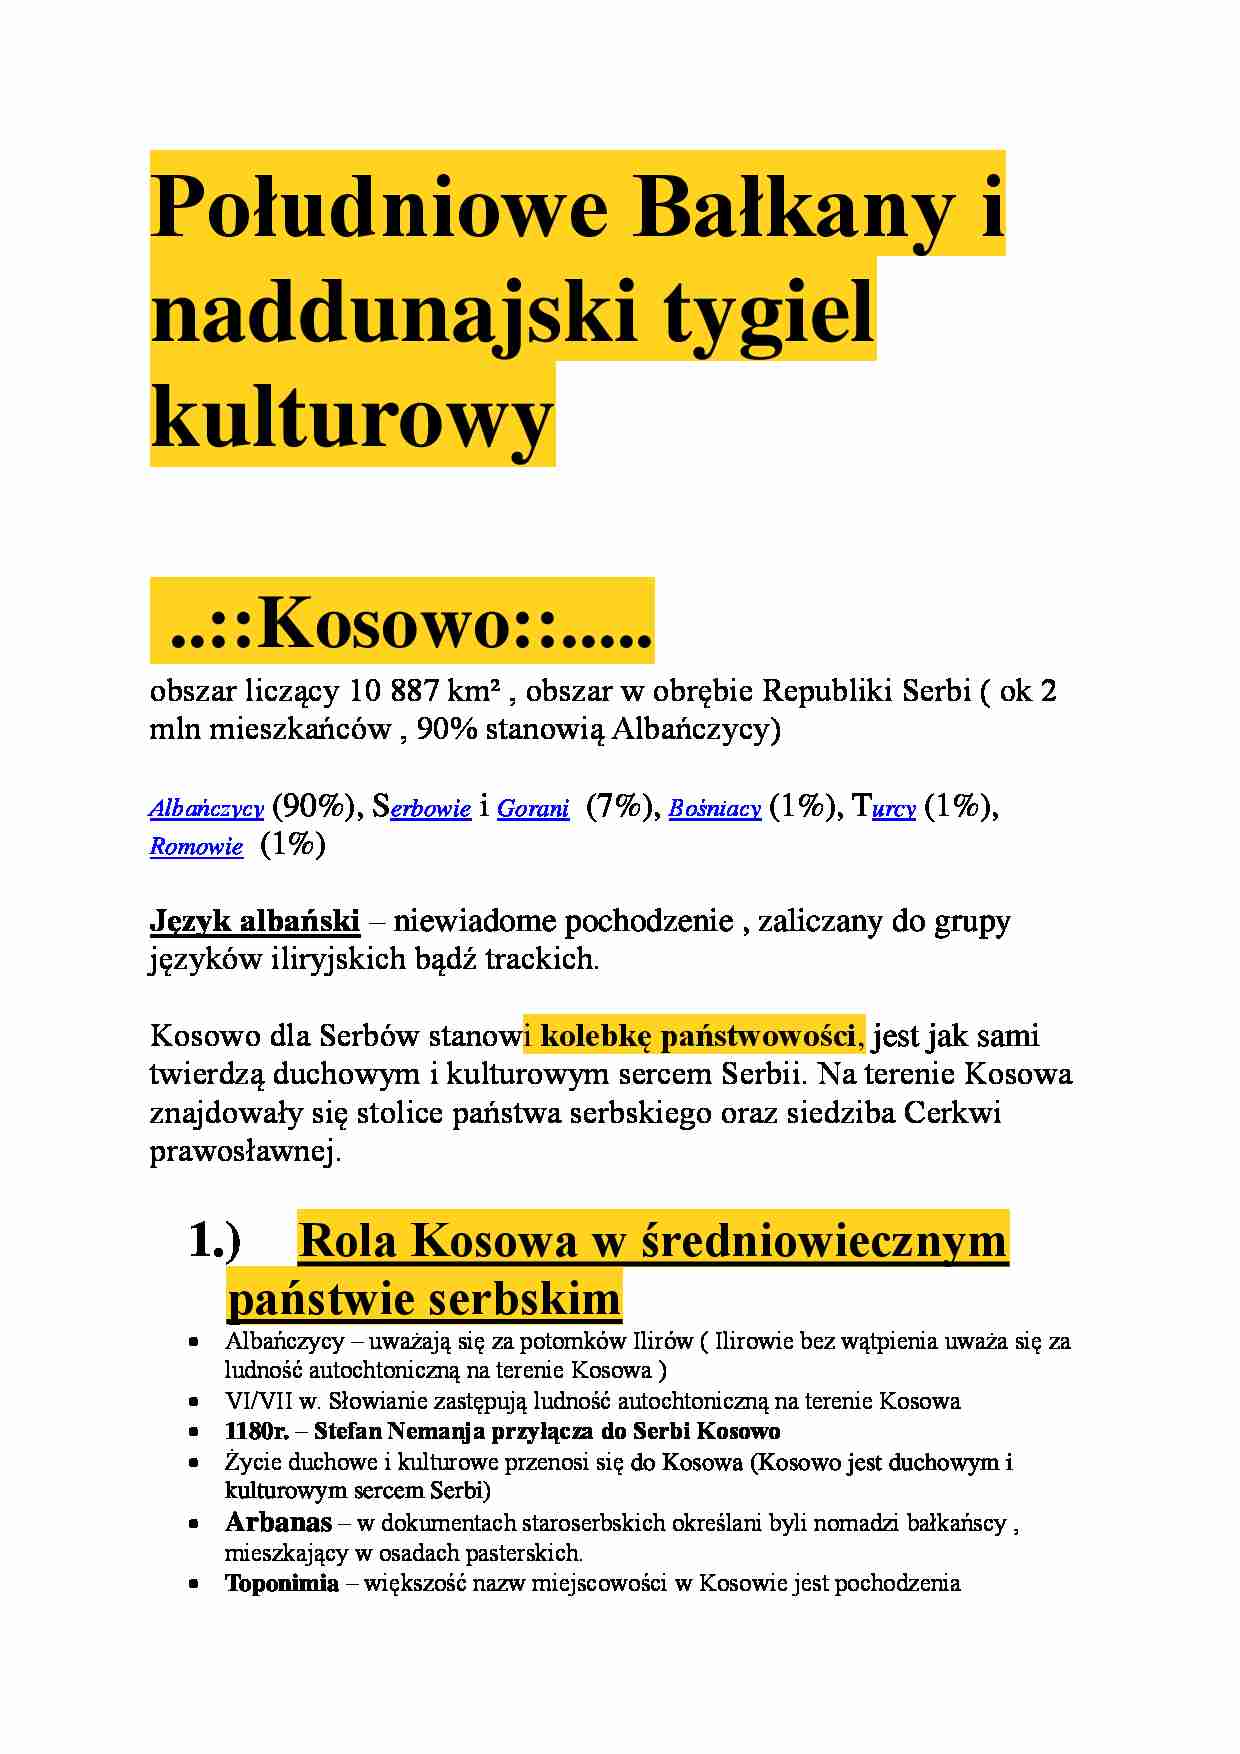 Południowe Bałkany i naddunajski tygiel kulturowy - Kosowo - strona 1